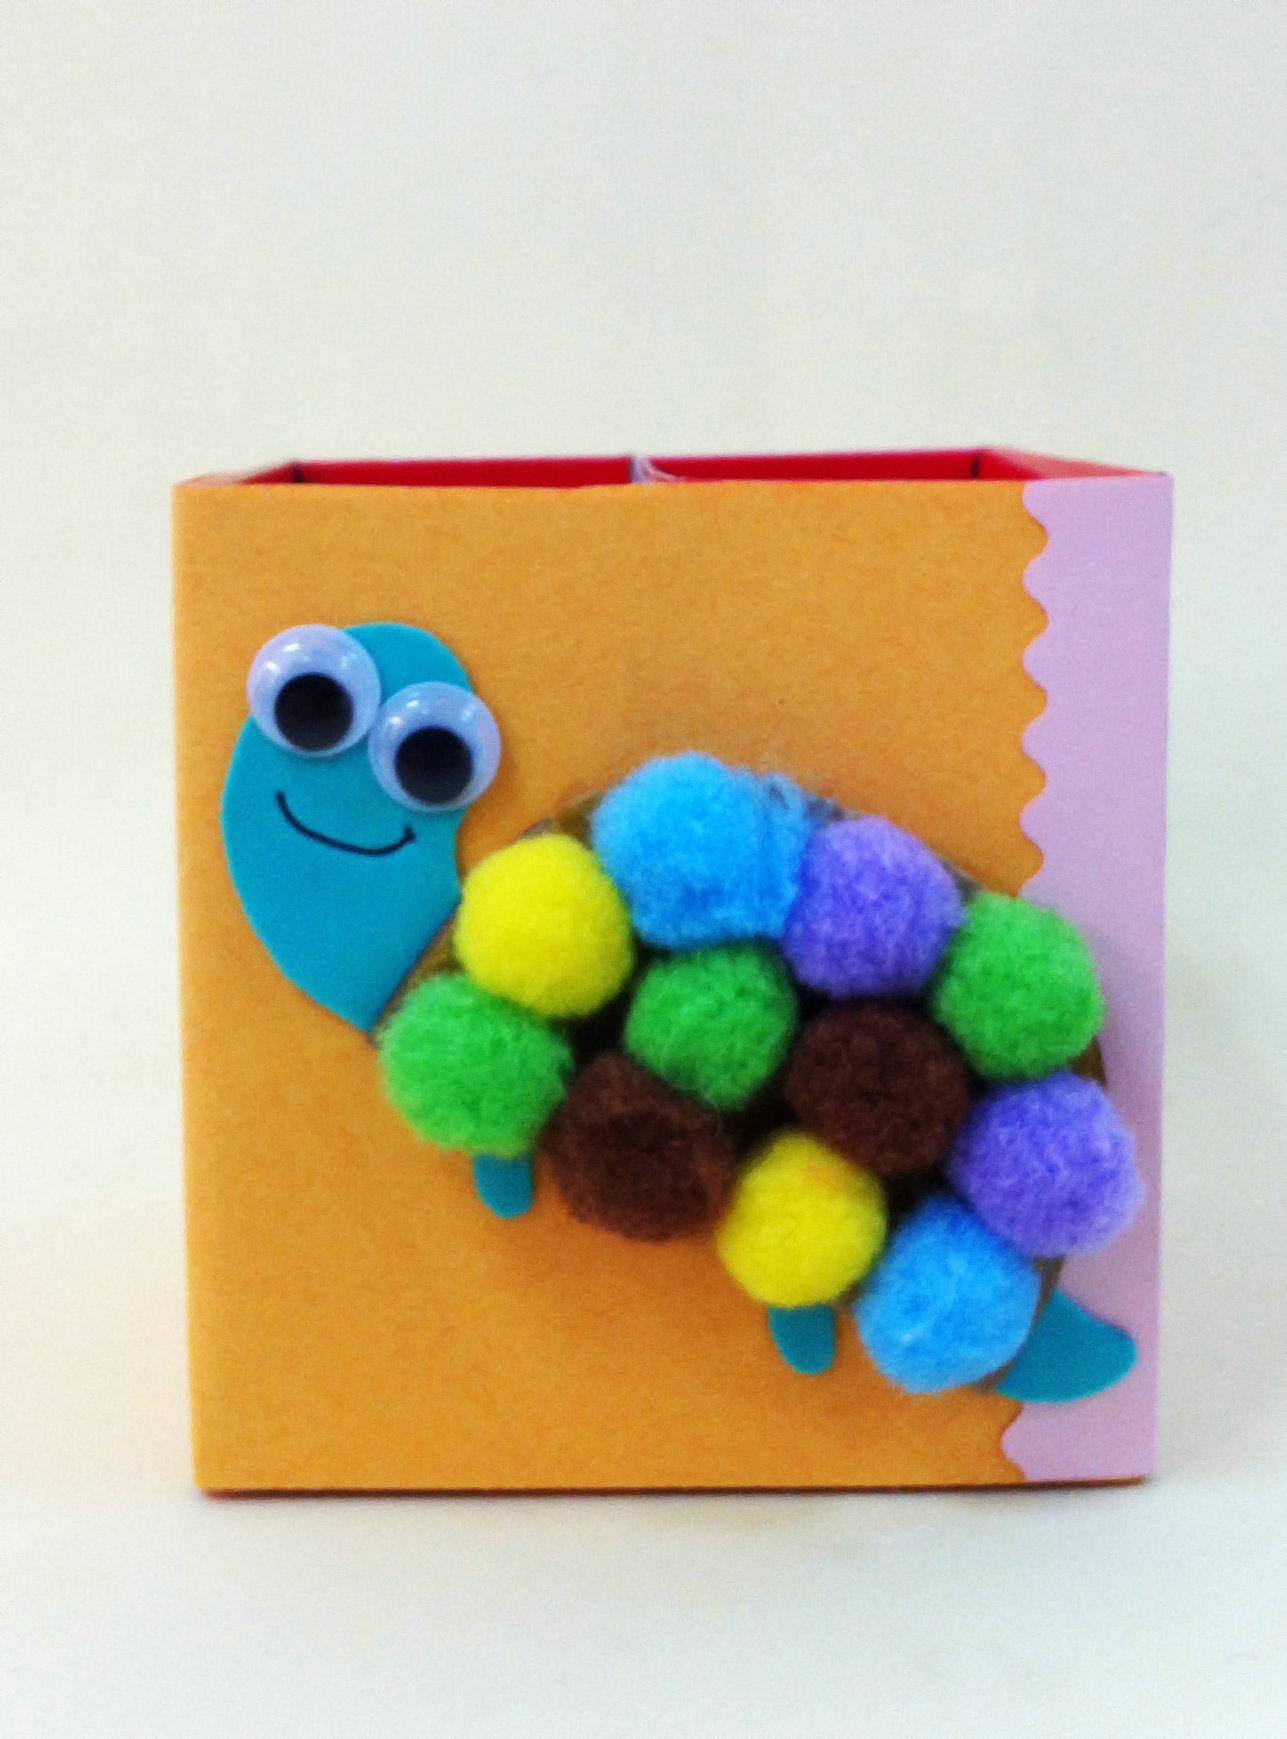 用纸盒和毛球DIY漂亮的小海龟笔筒做法图解教程